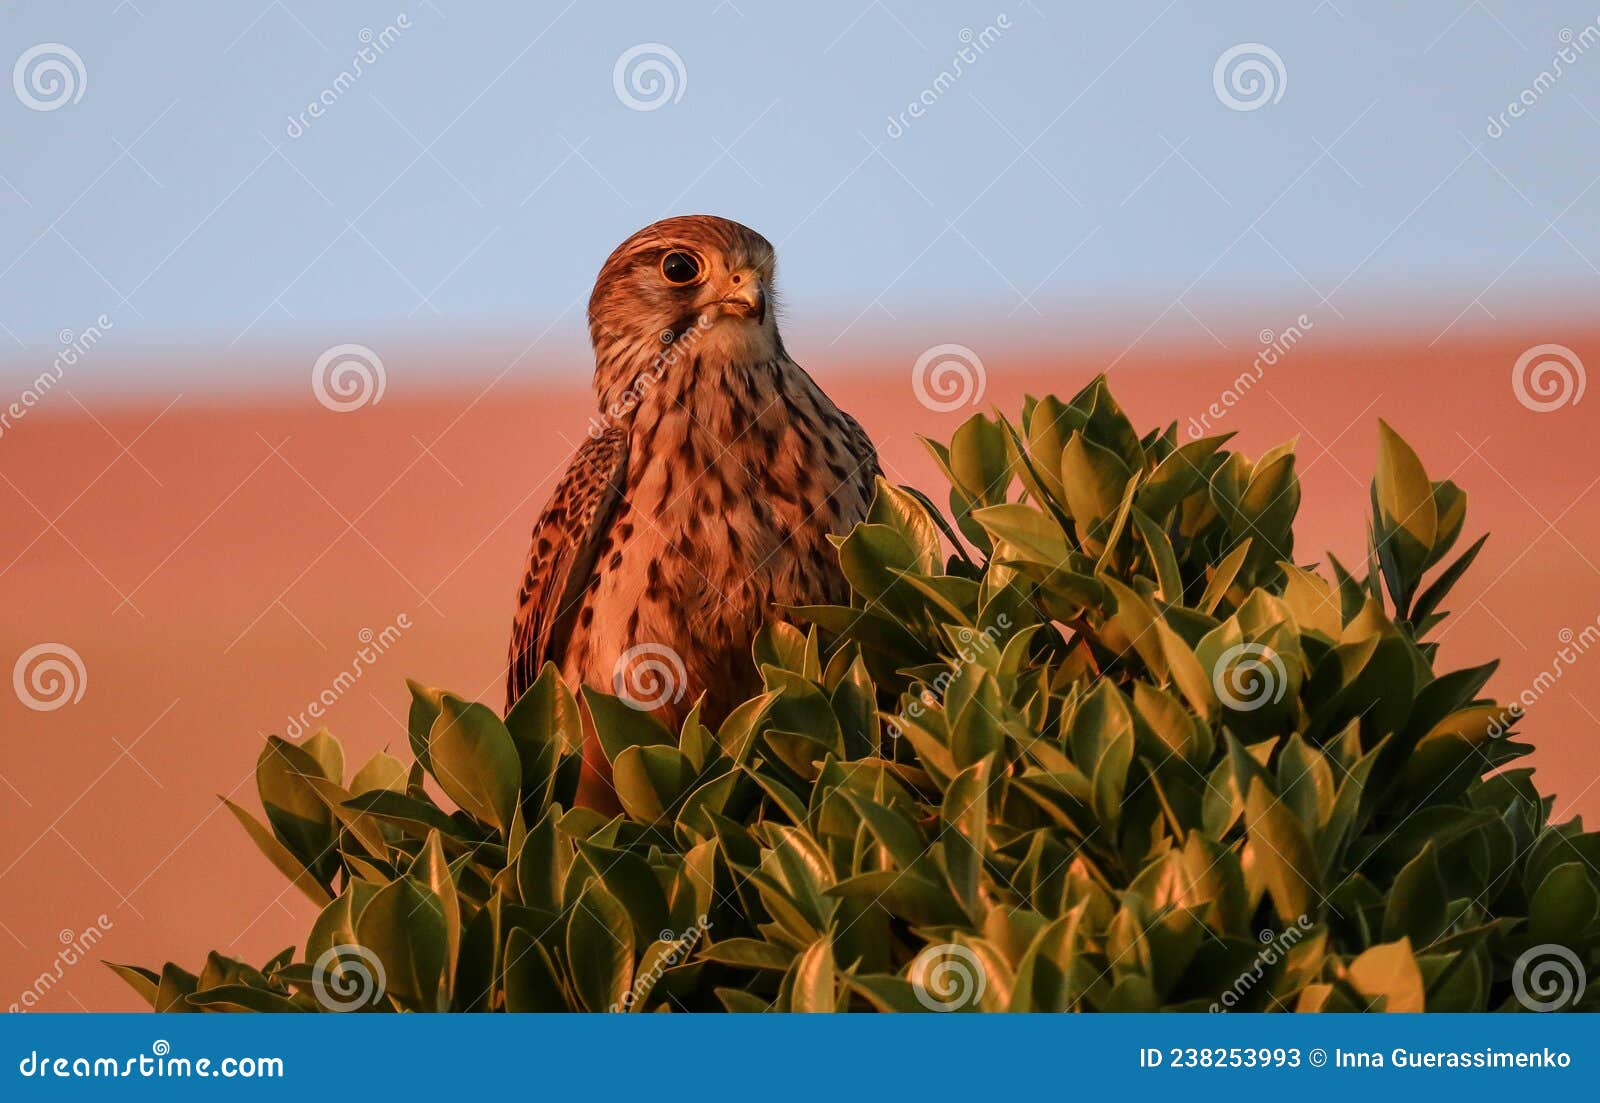 un faucon sur un arbre avec un trÃÂ¨s beau coucher de soleil